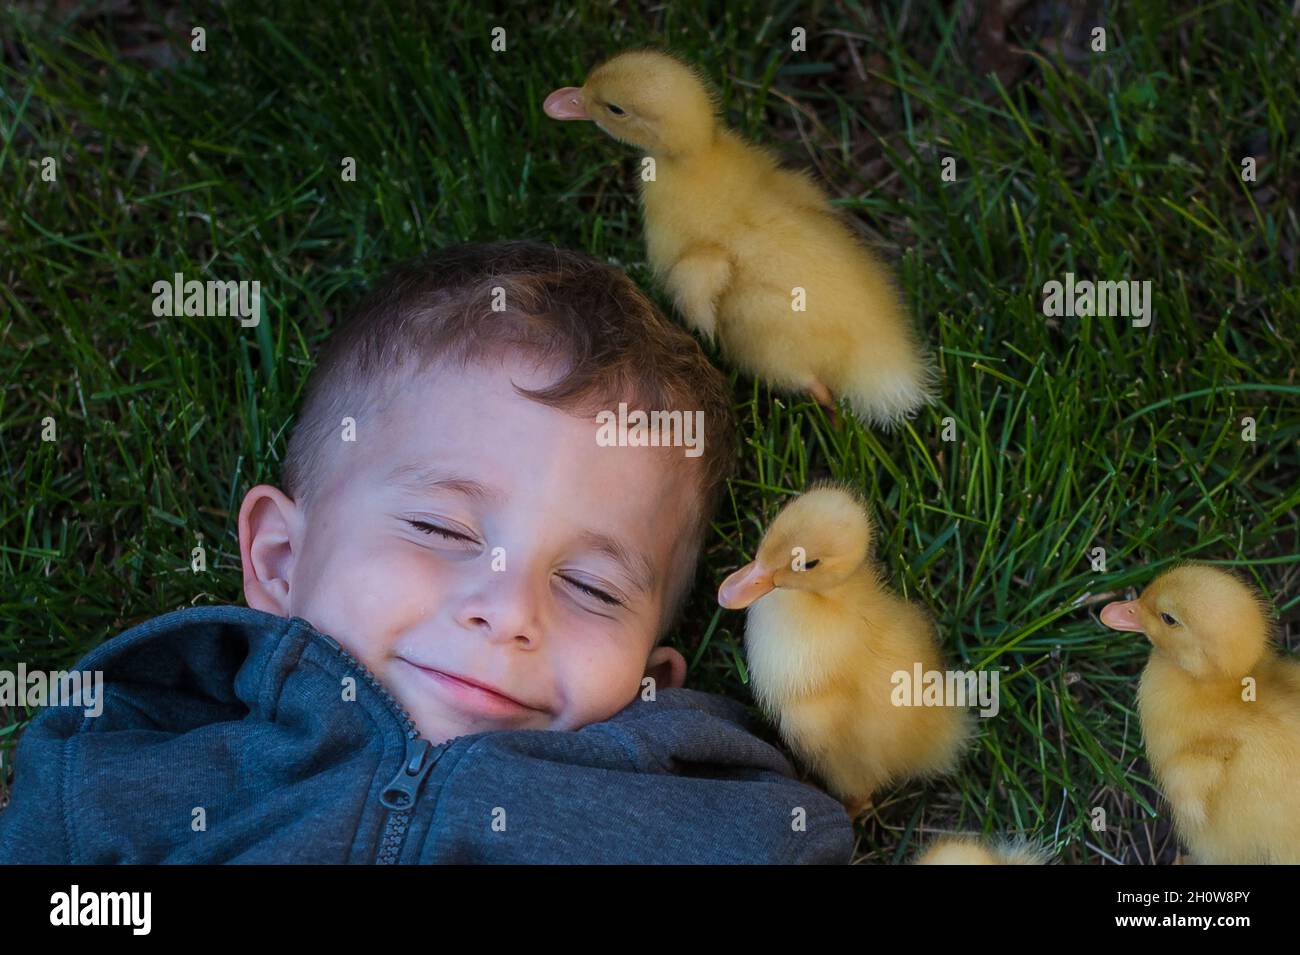 Un petit garçon riant tandis que des petits canards marchent autour de lui Banque D'Images